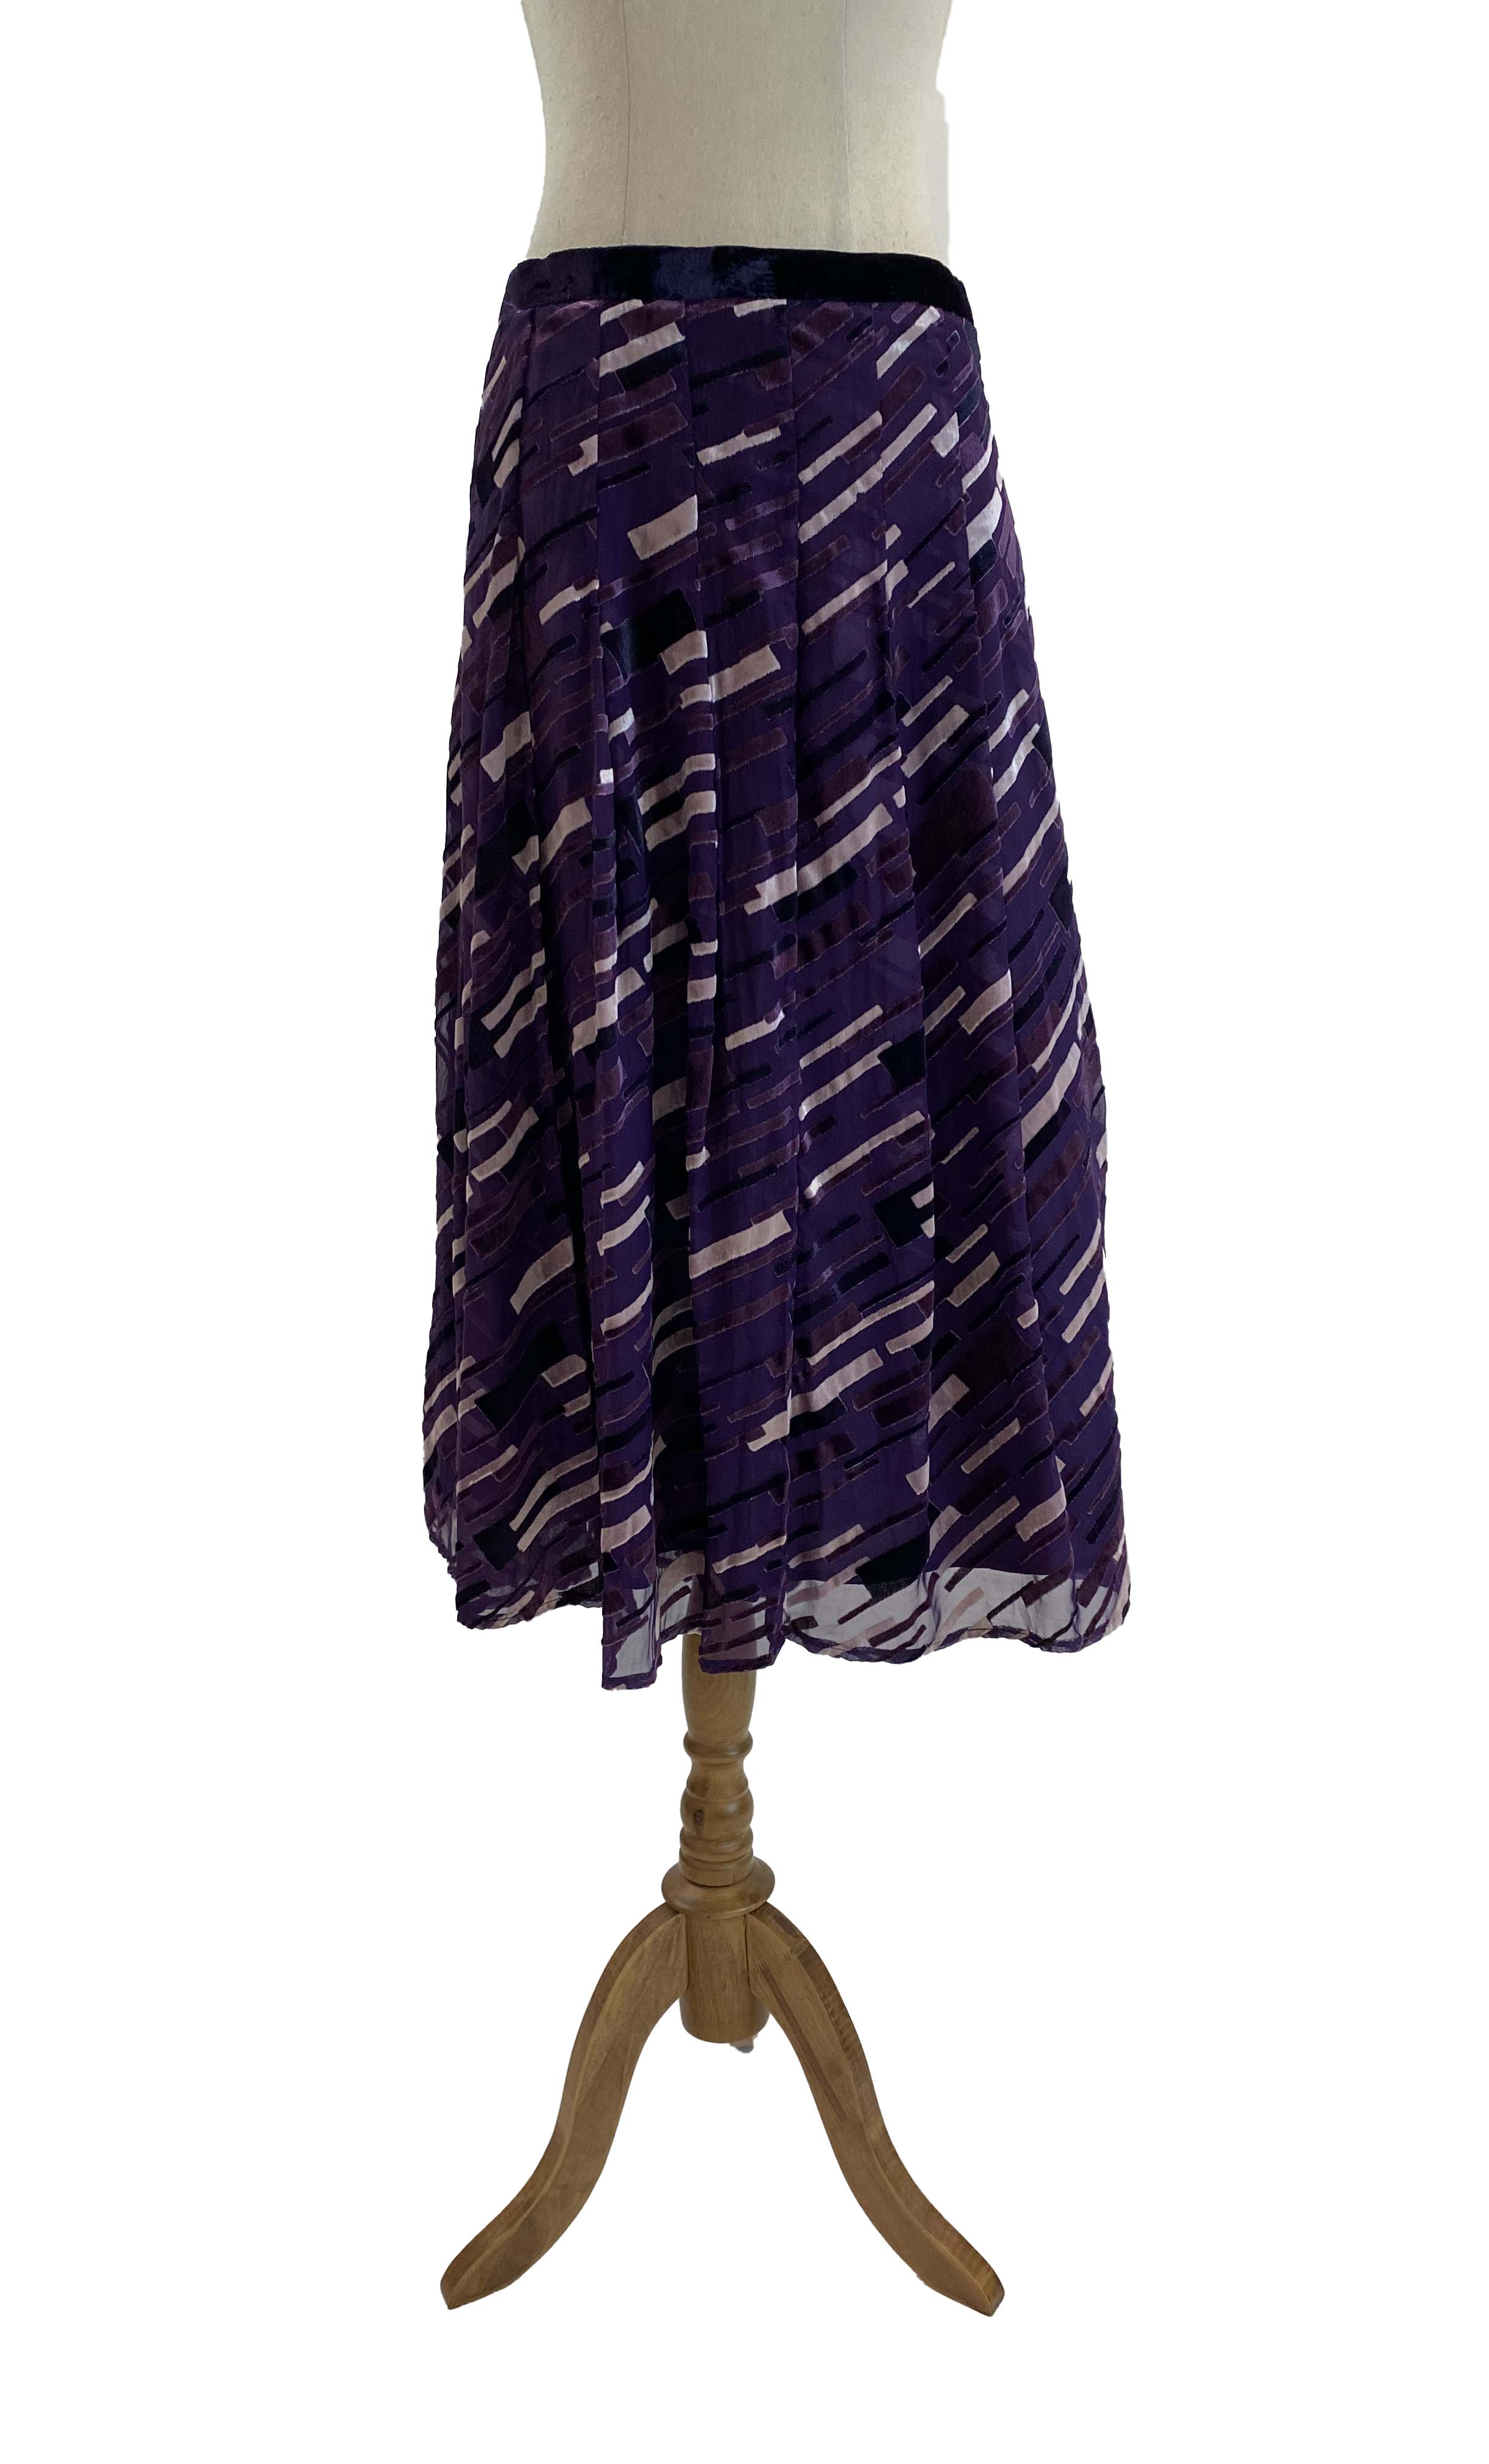 LIZ JORDAN purple skirt 